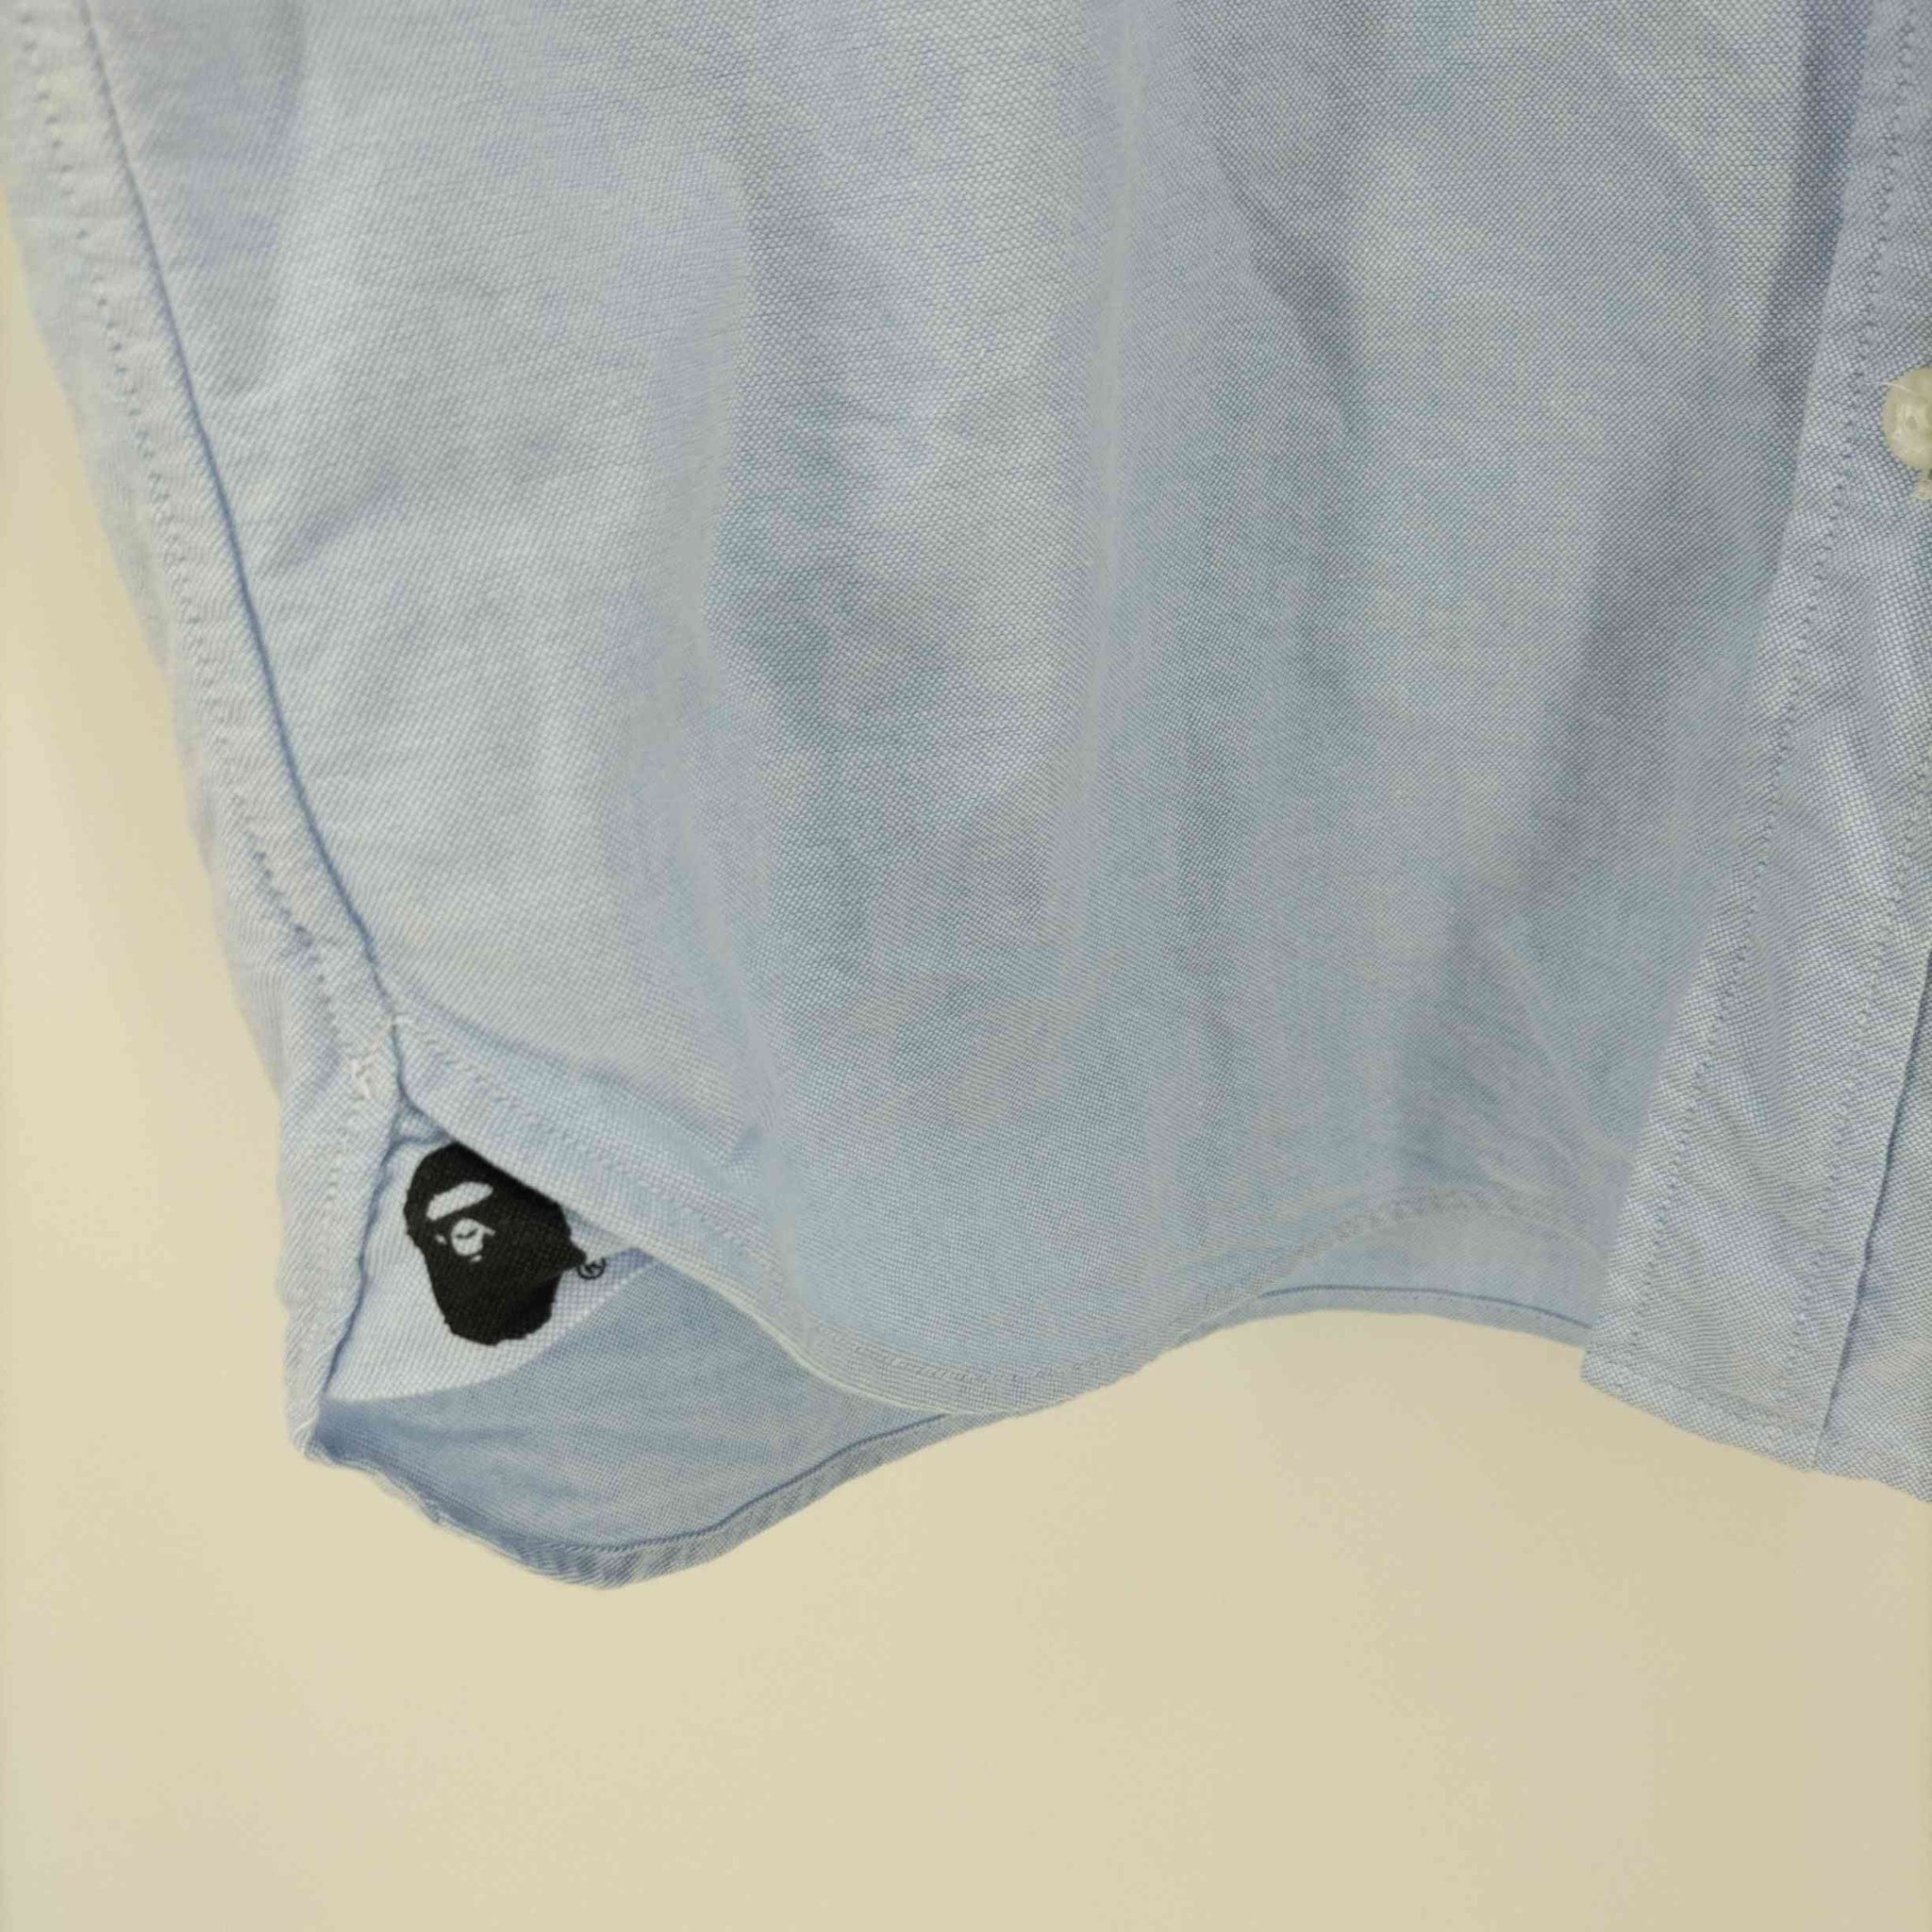 A BATHING APE(アベイシングエイプ)ロゴ刺繍 コットン ボタンダウン S/Sシャツ